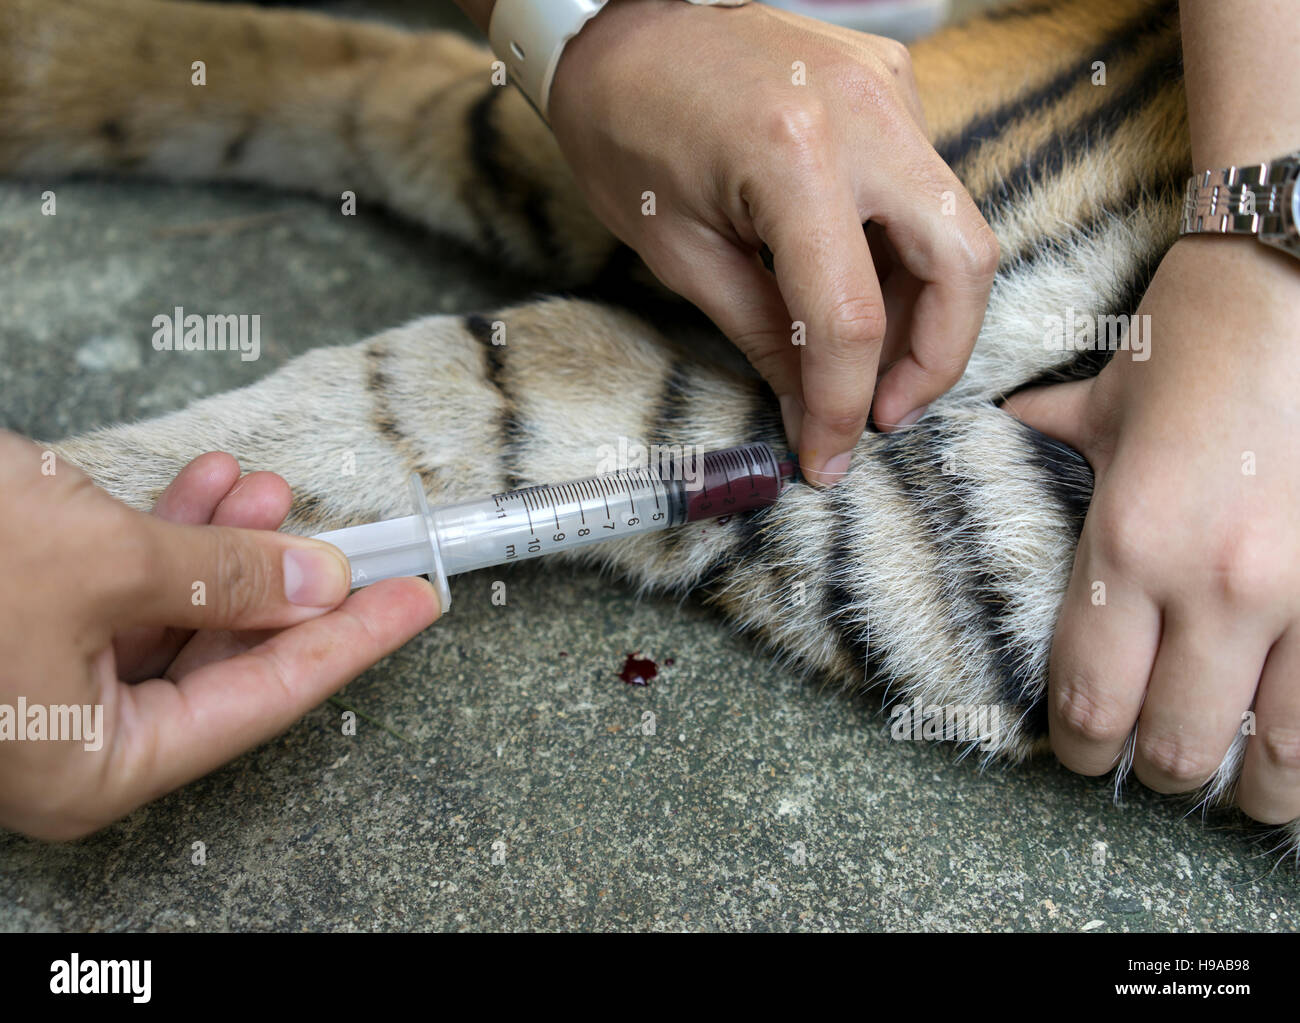 Tierarzt behandeln die Tiger in einem zoo Stockfoto